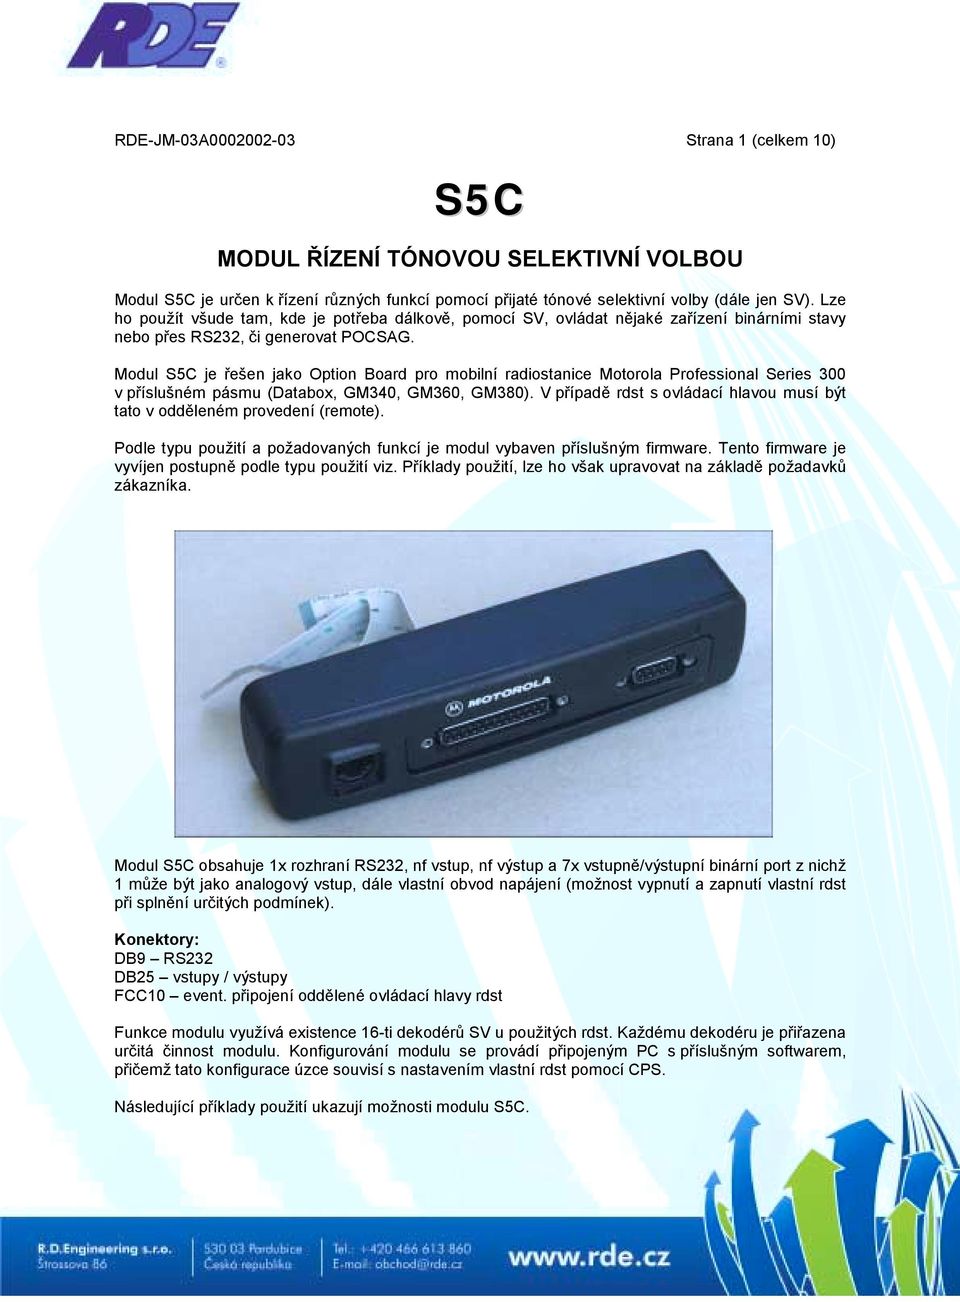 Modul S5C je řešen jako Option Board pro mobilní radiostanice Motorola Professional Series 300 v příslušném pásmu (Databox, GM340, GM360, GM380).